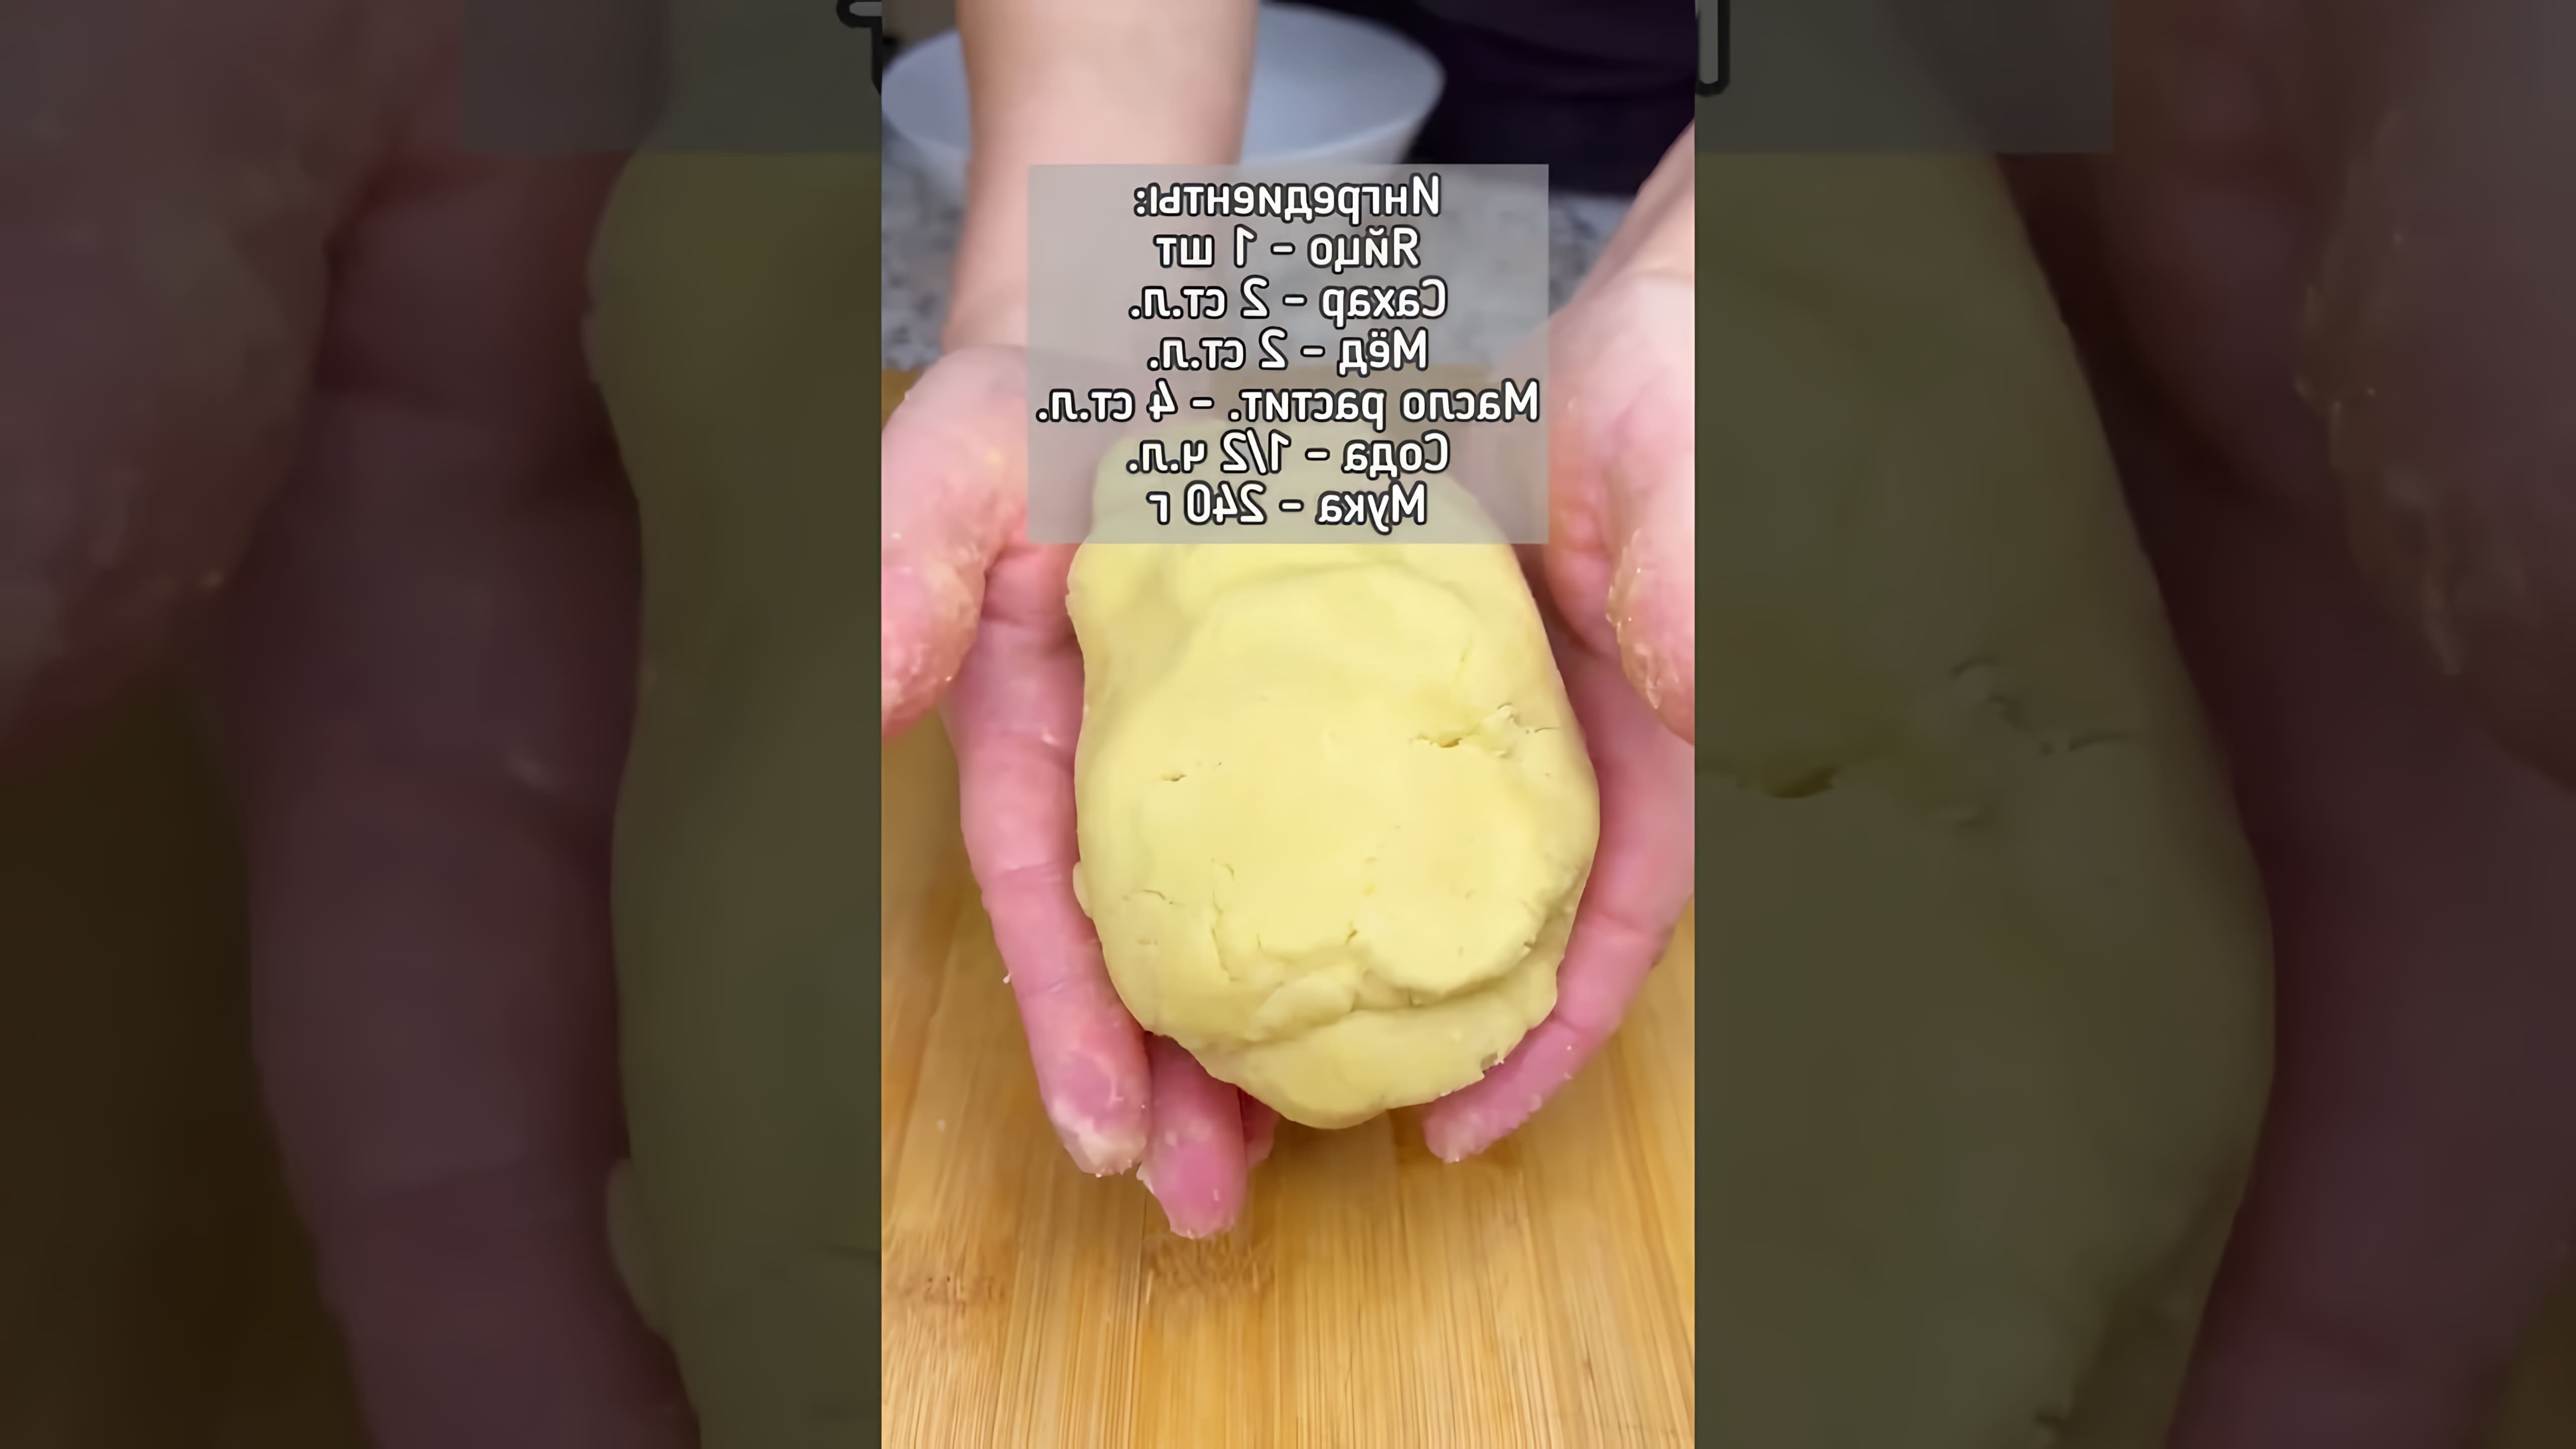 В этом видео демонстрируется процесс приготовления медового печенья по старинному рецепту